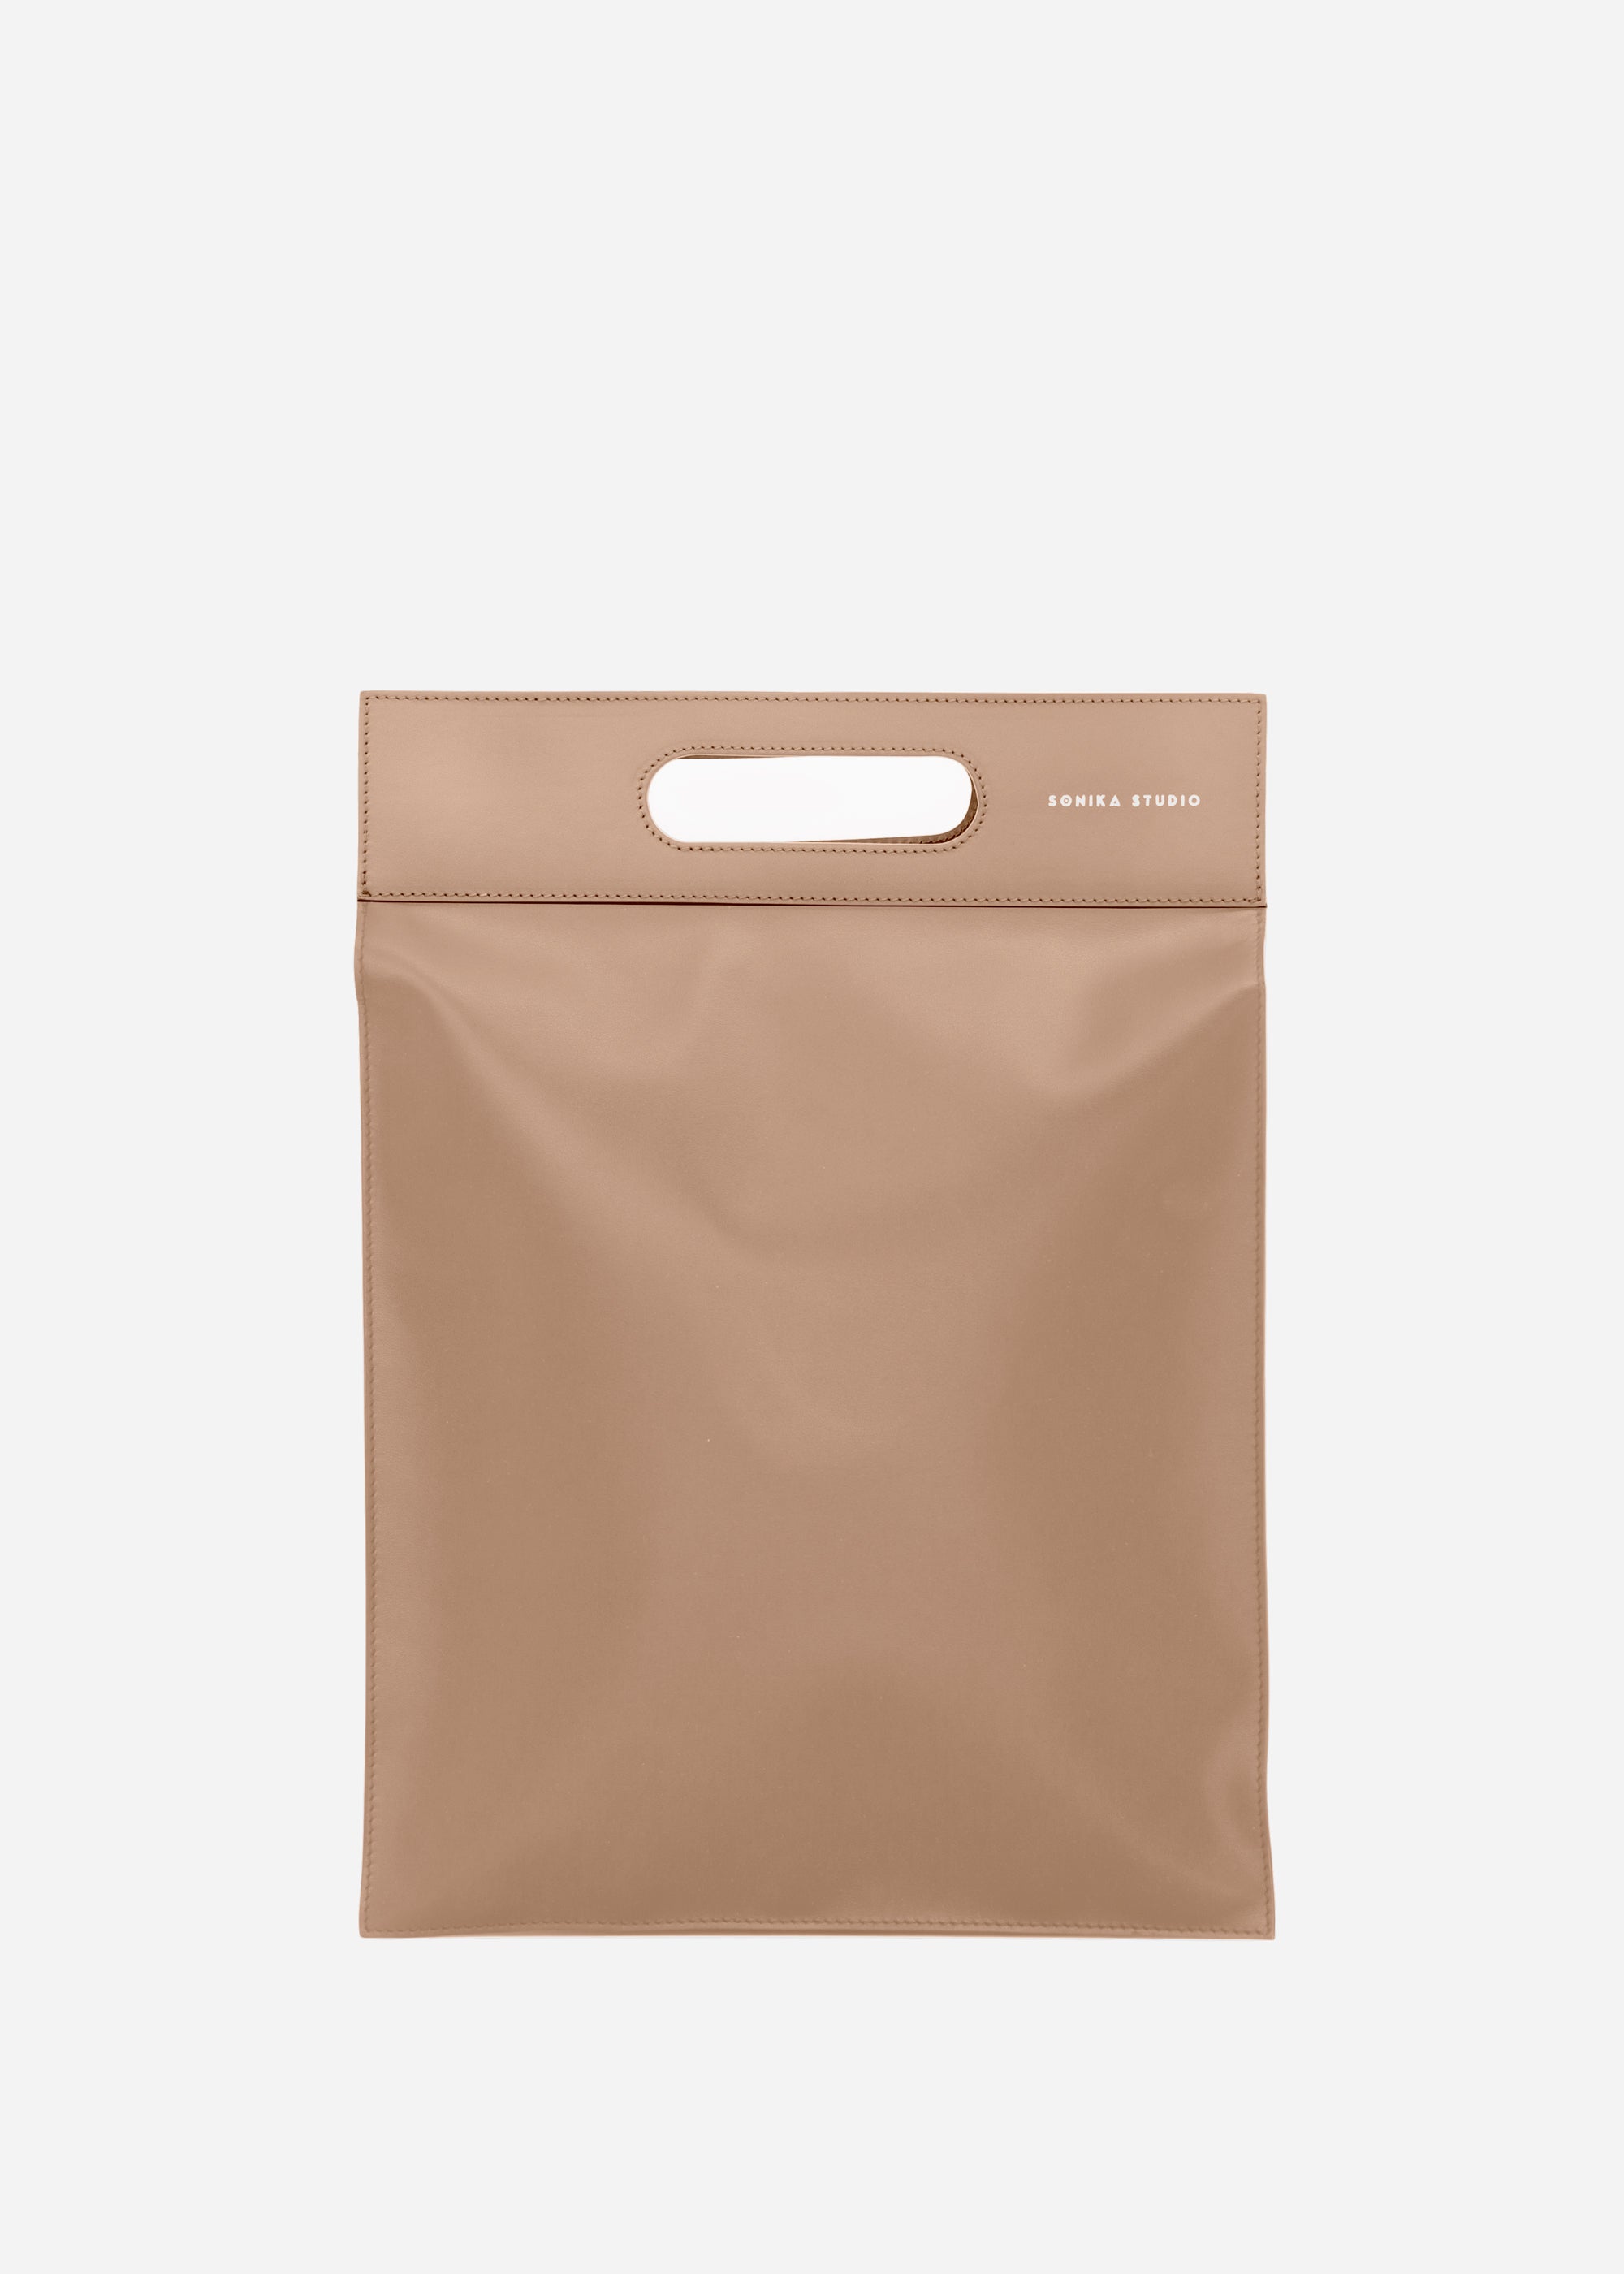 Flat Laptop Tote Bag Sarany - Hazelnut leather